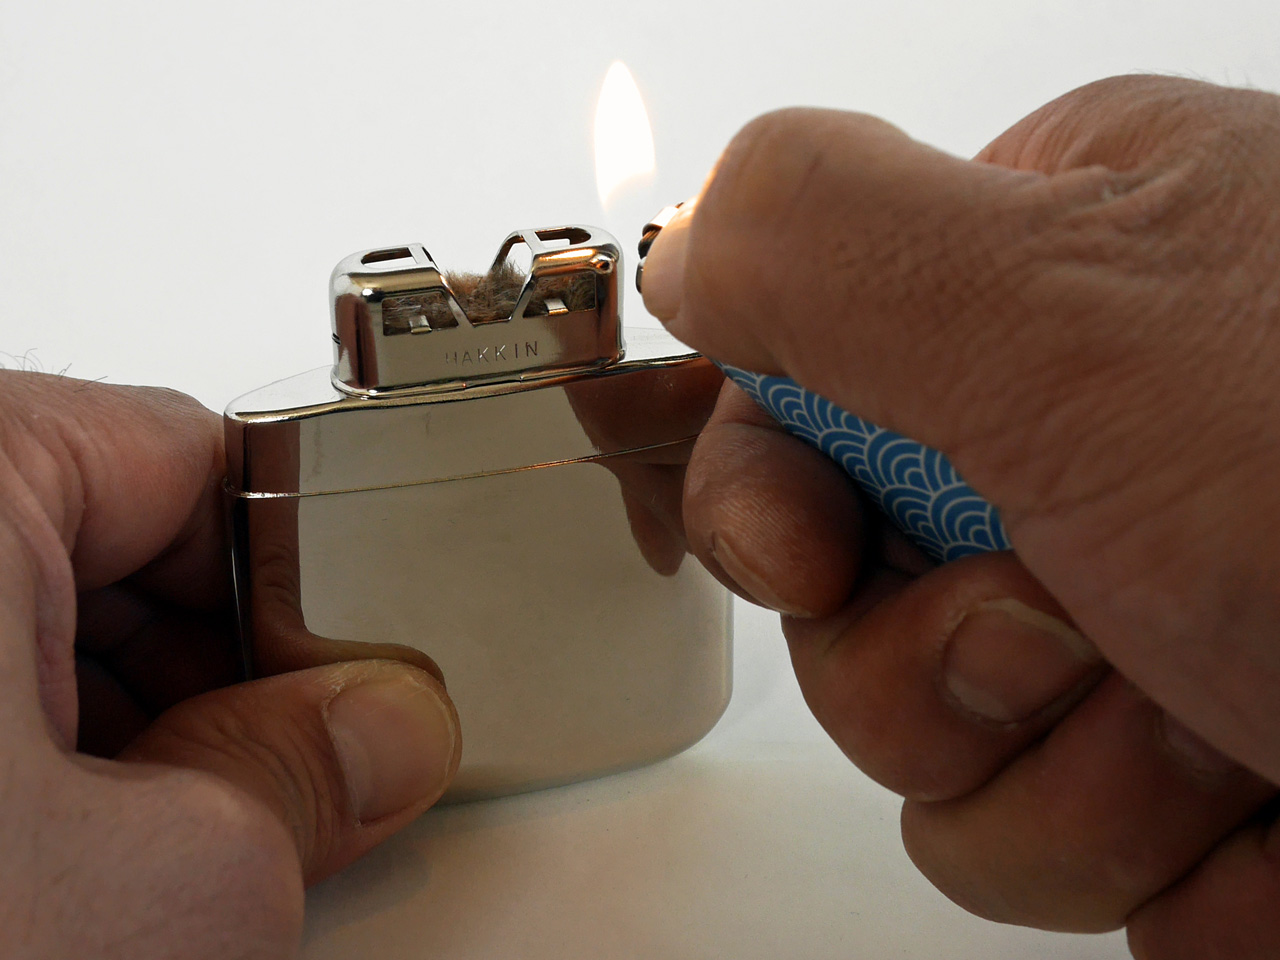 ハクキンカイロ mini の火口をライターで暖める